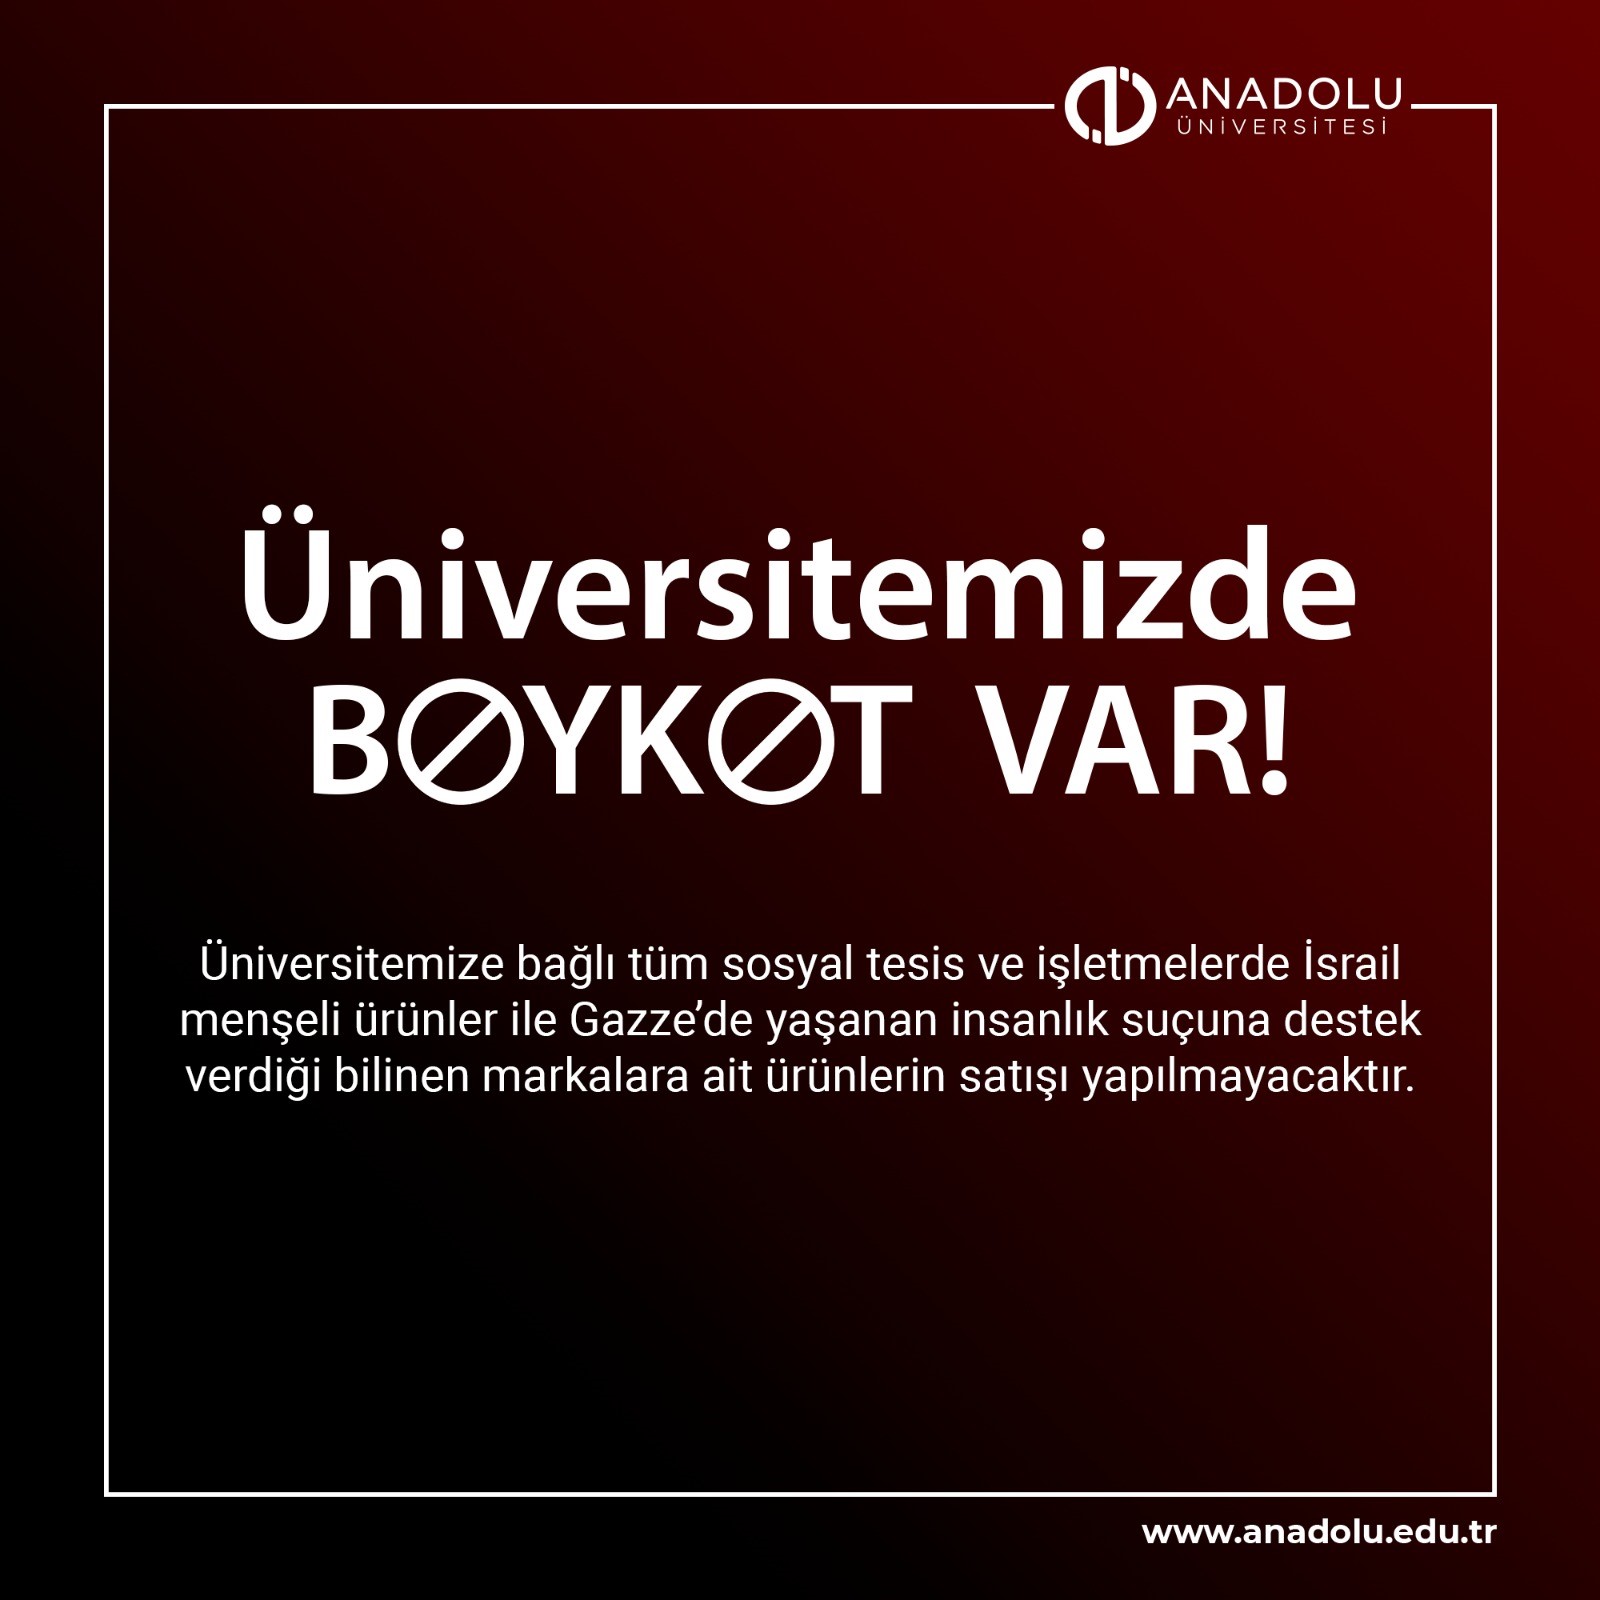 Anadolu Üniversitesi de boykot kararı aldı